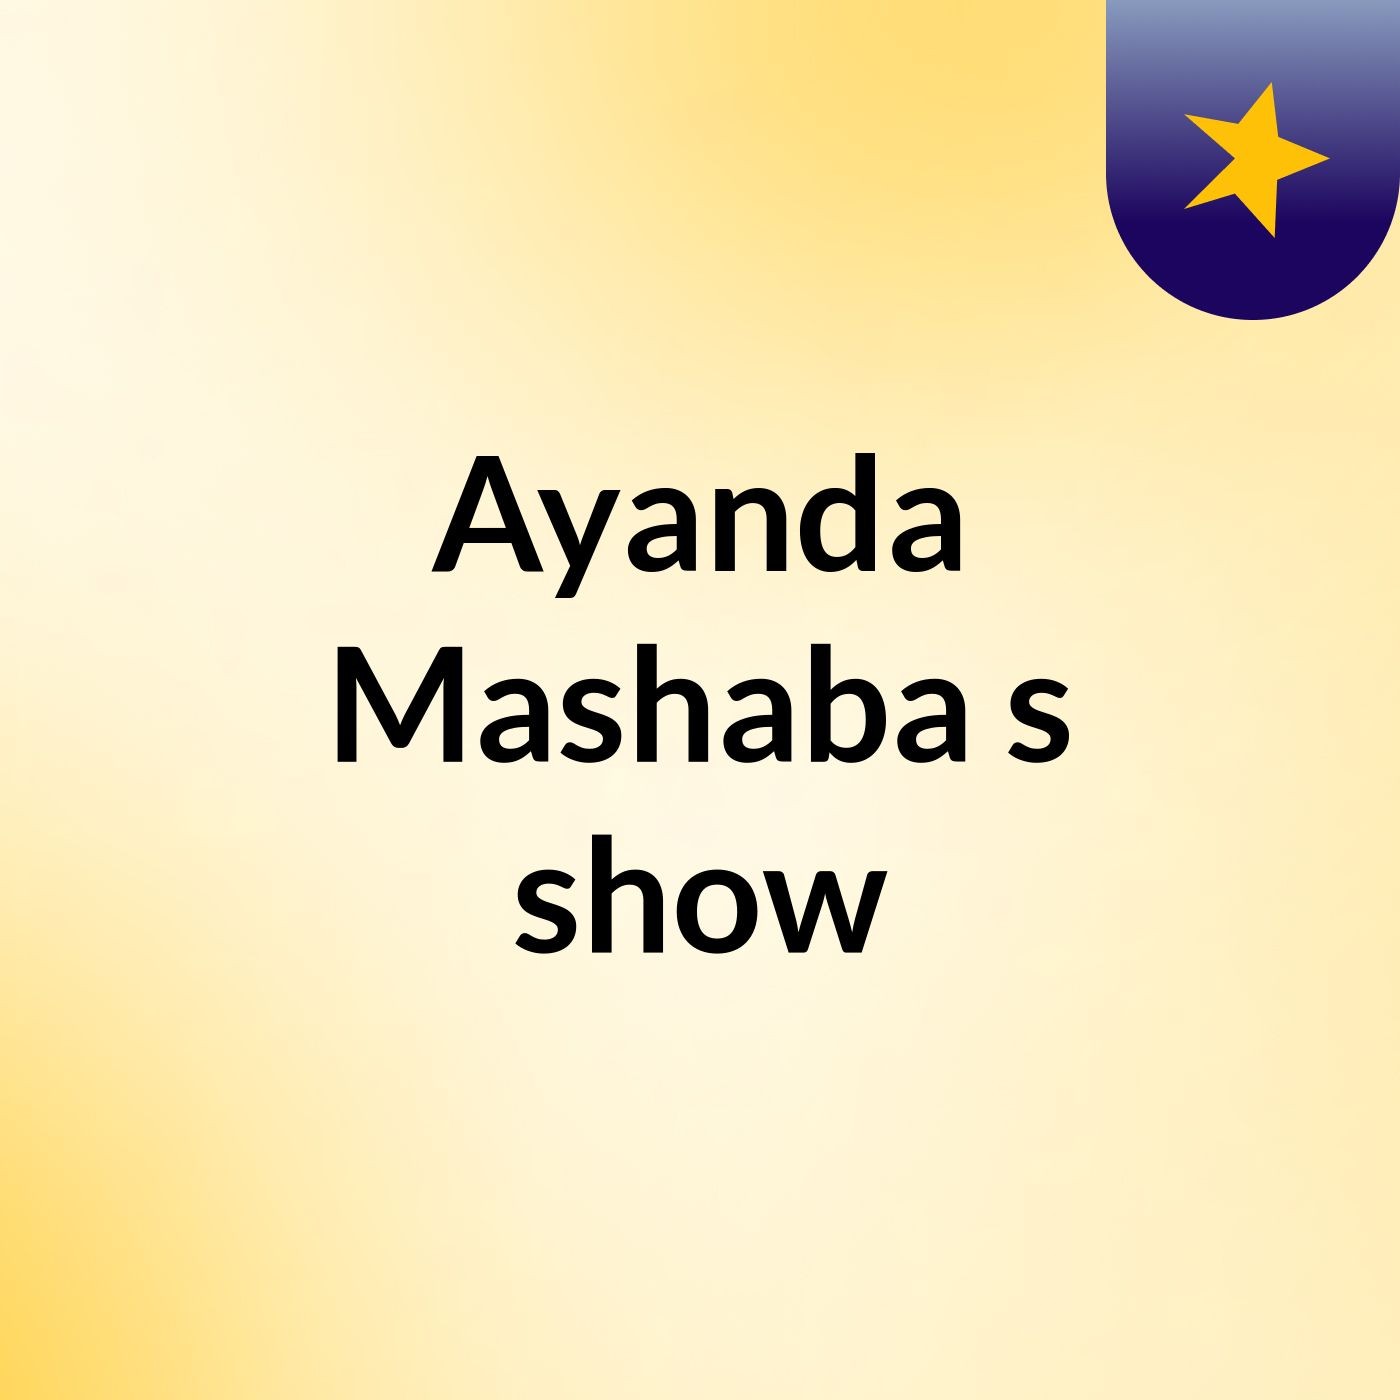 Ayanda Mashaba's show